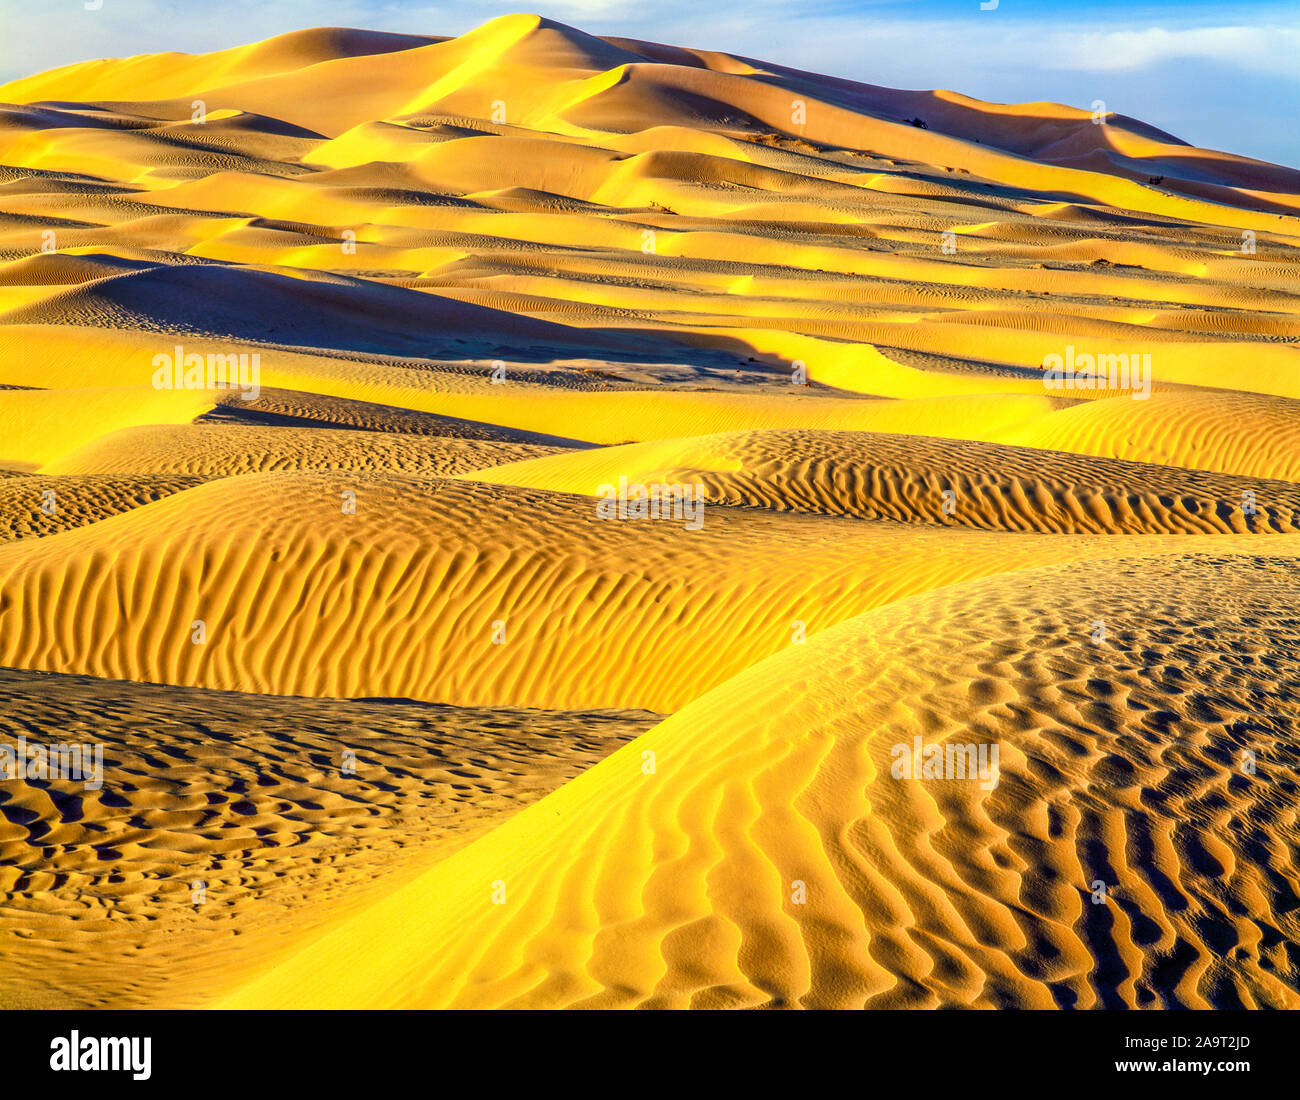 Las dunas de arena de Rub' al Khali, el Cuarto Vacío, Sultanato de Omán, el inmenso mar de arena de la Península Arábiga, uno de los desiertos más grandes del mundo. Foto de stock